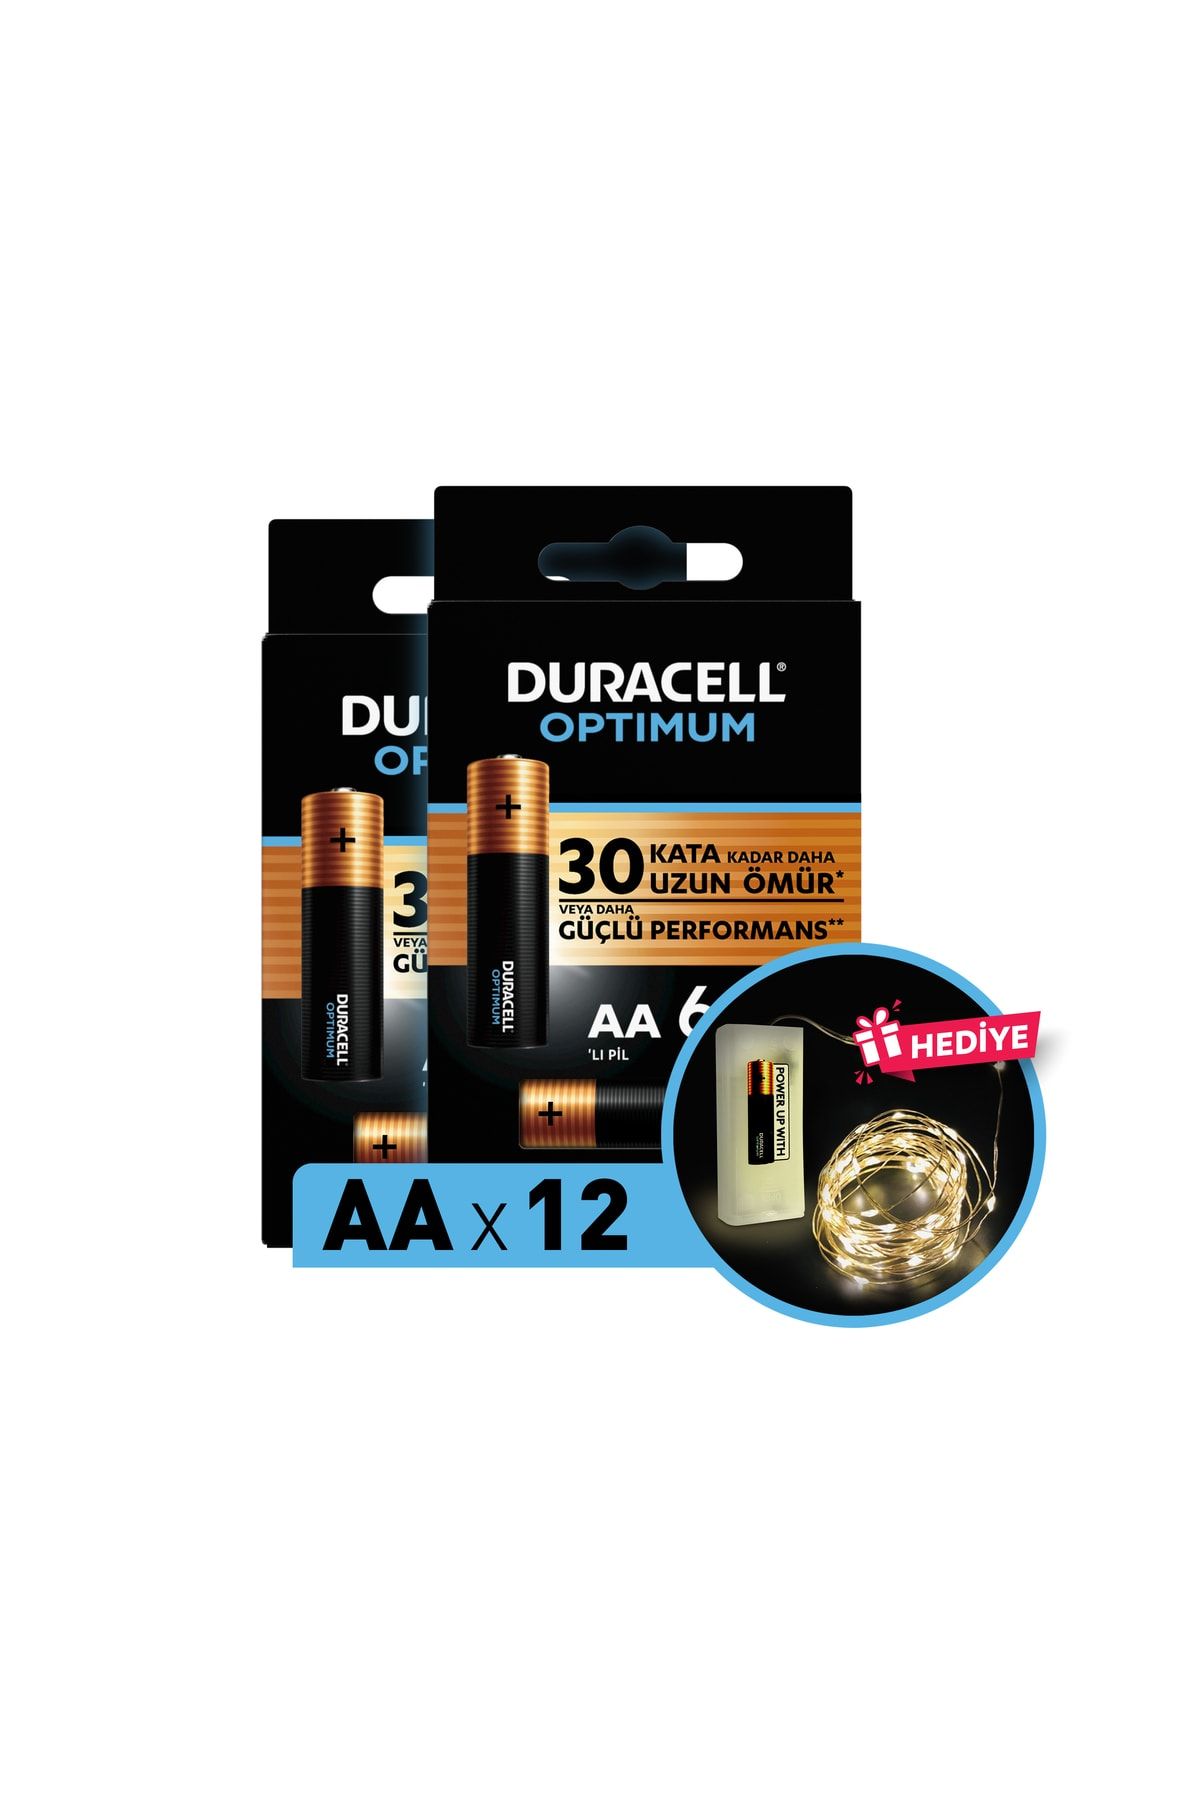 Duracell Optimum Aa Alkalin Pil, 1,5 V Lr6 Mn1500, 12’li Paket Ve Led Işık